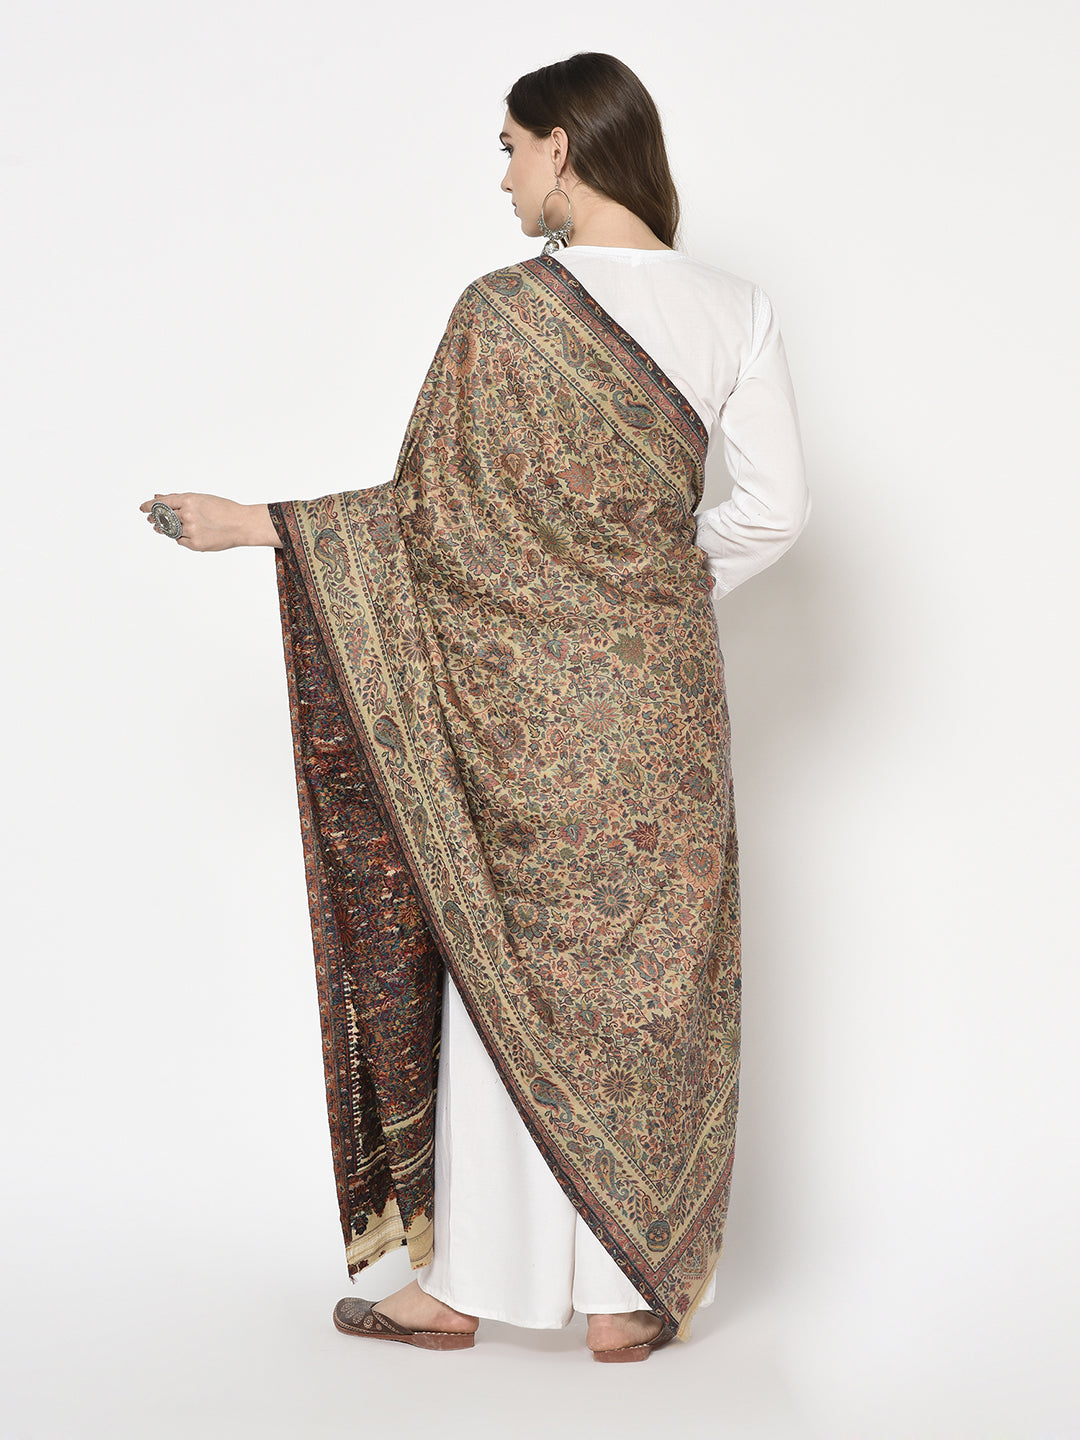 Safaa Viscose Acrylic Fabric Women's Beige Stole